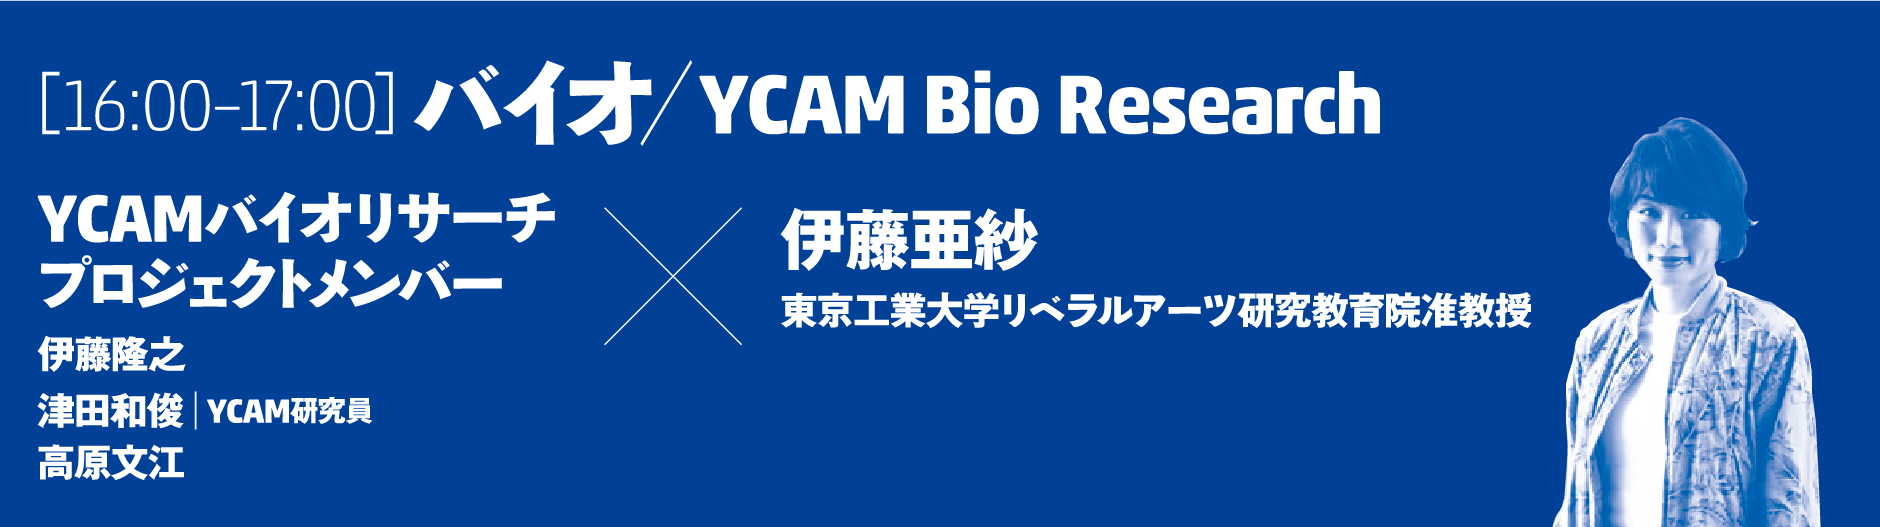 [16:00–17:00]バイオ／YCAM Bio Research